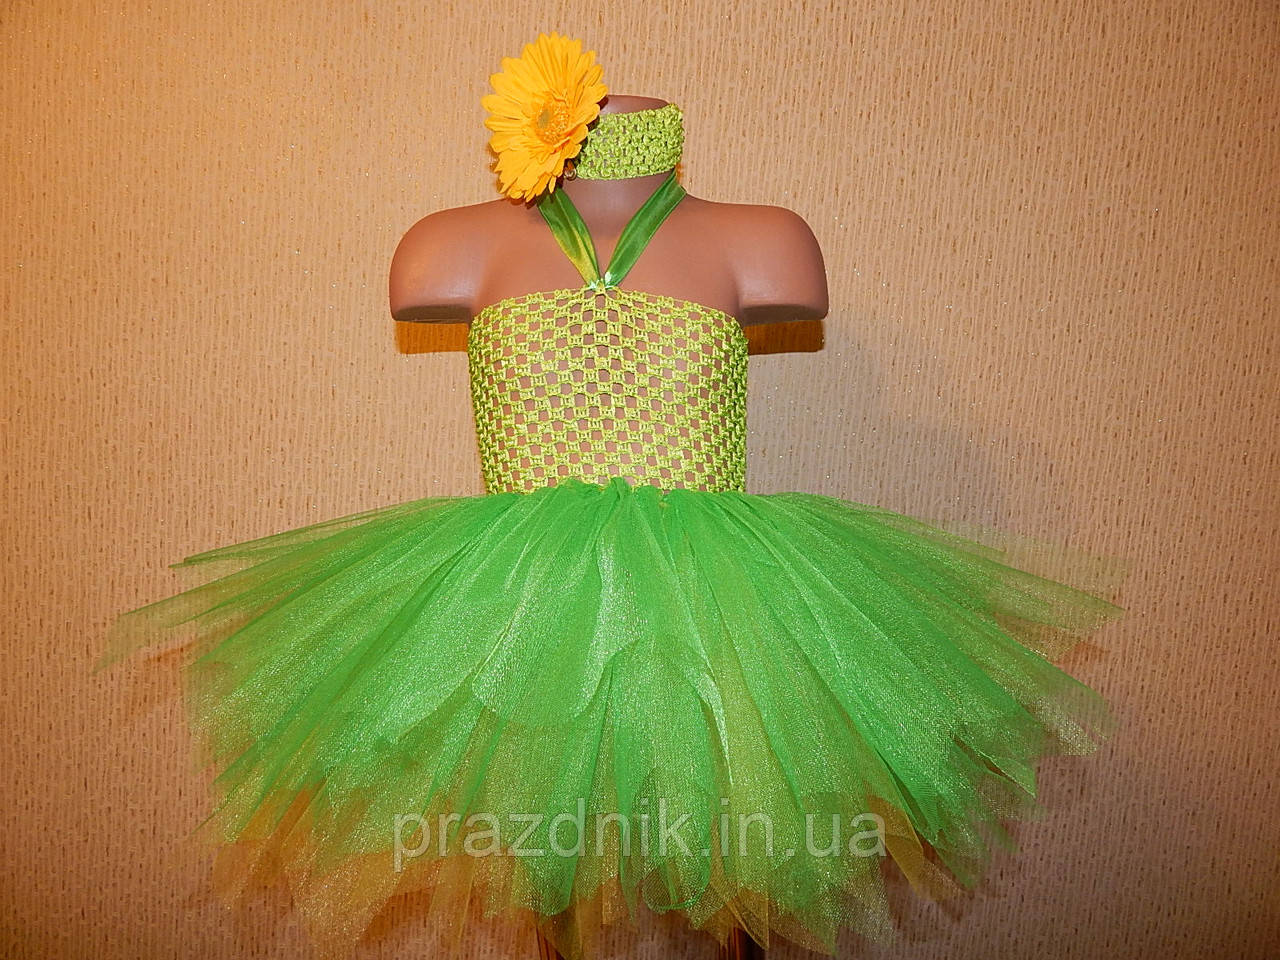 Карнавальный костюм подсолнуха для девочки